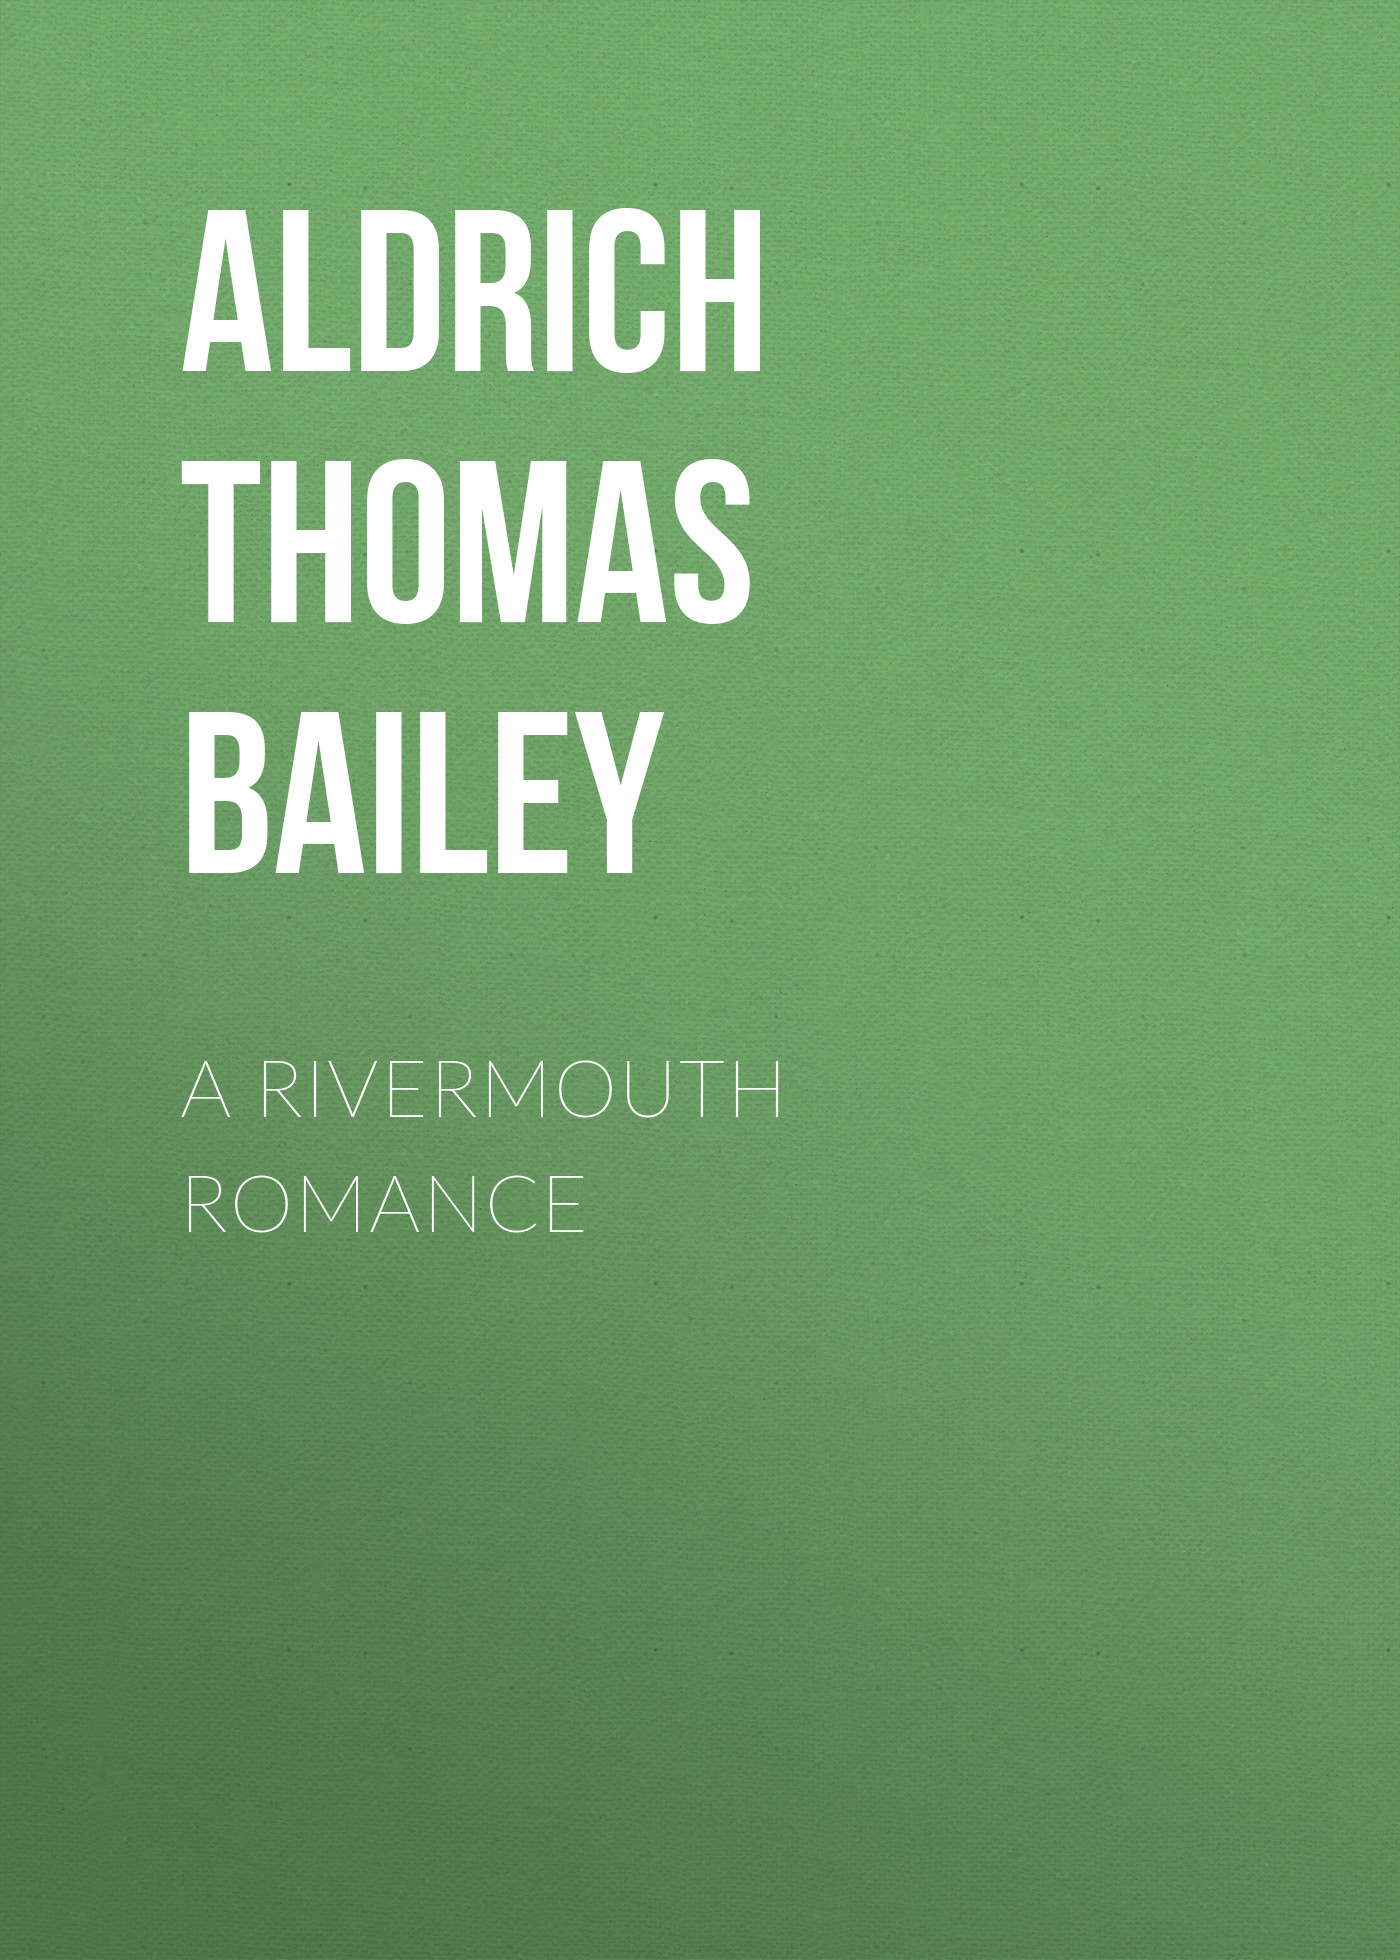 Книга A Rivermouth Romance из серии , созданная Thomas Aldrich, может относится к жанру Зарубежная классика, Литература 19 века, Зарубежная старинная литература. Стоимость электронной книги A Rivermouth Romance с идентификатором 36367310 составляет 0 руб.